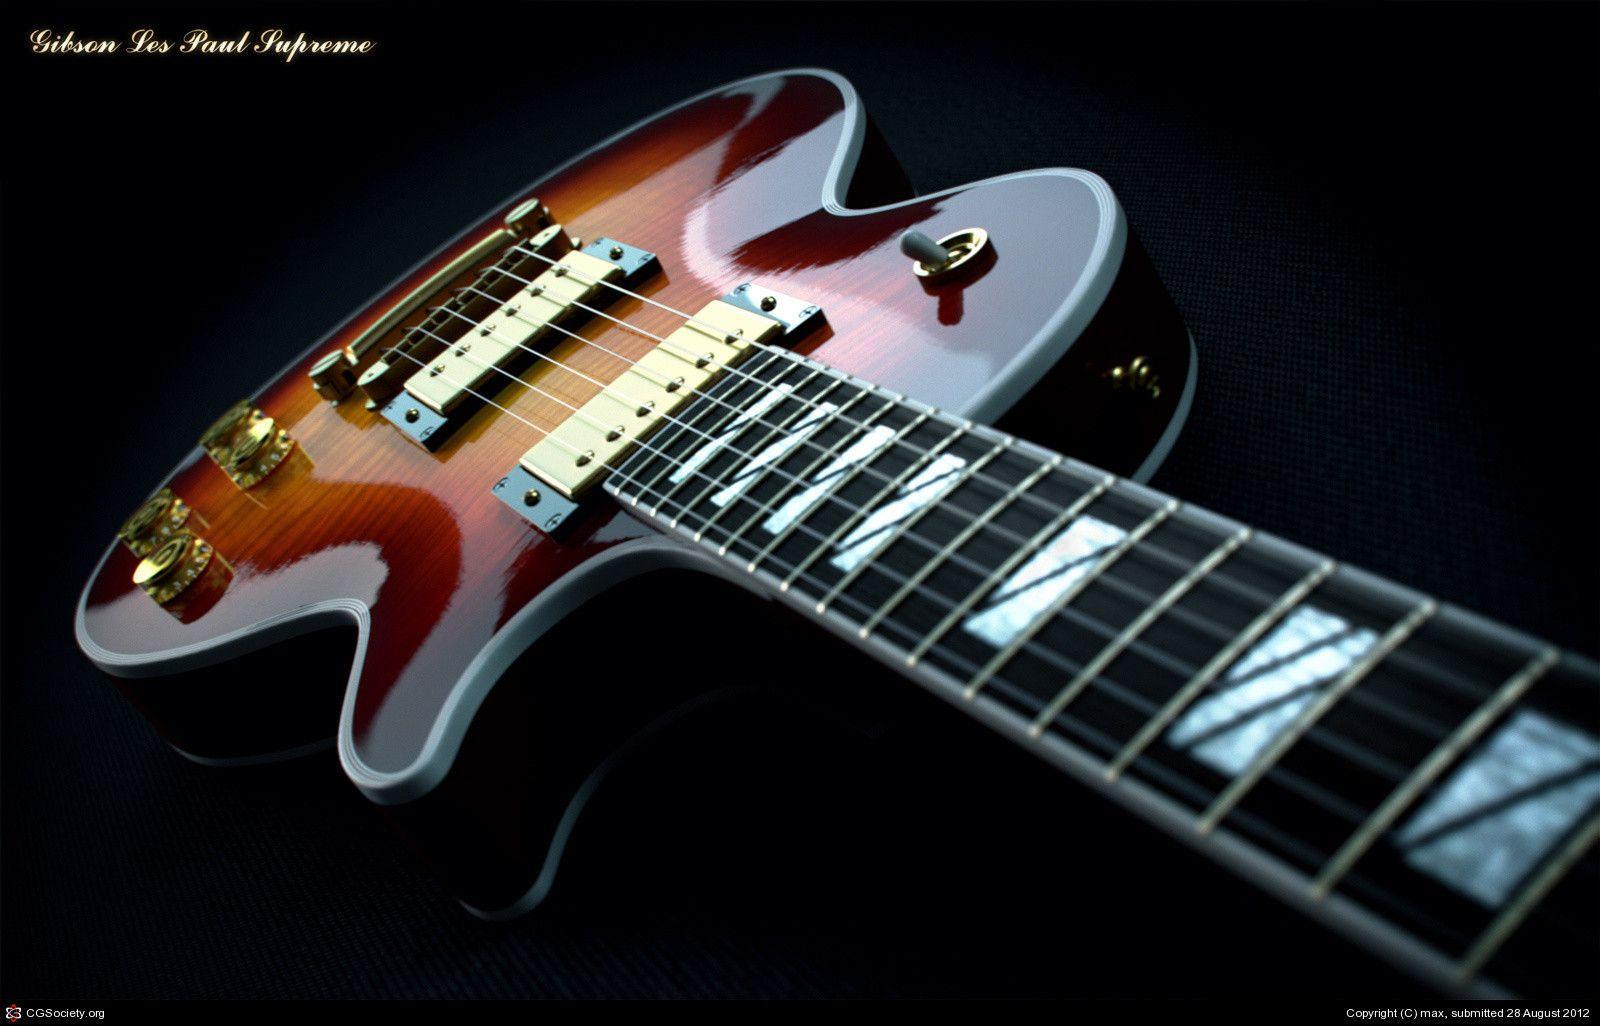 74 Gibson Les Paul Wallpaper On Wallpapersafari